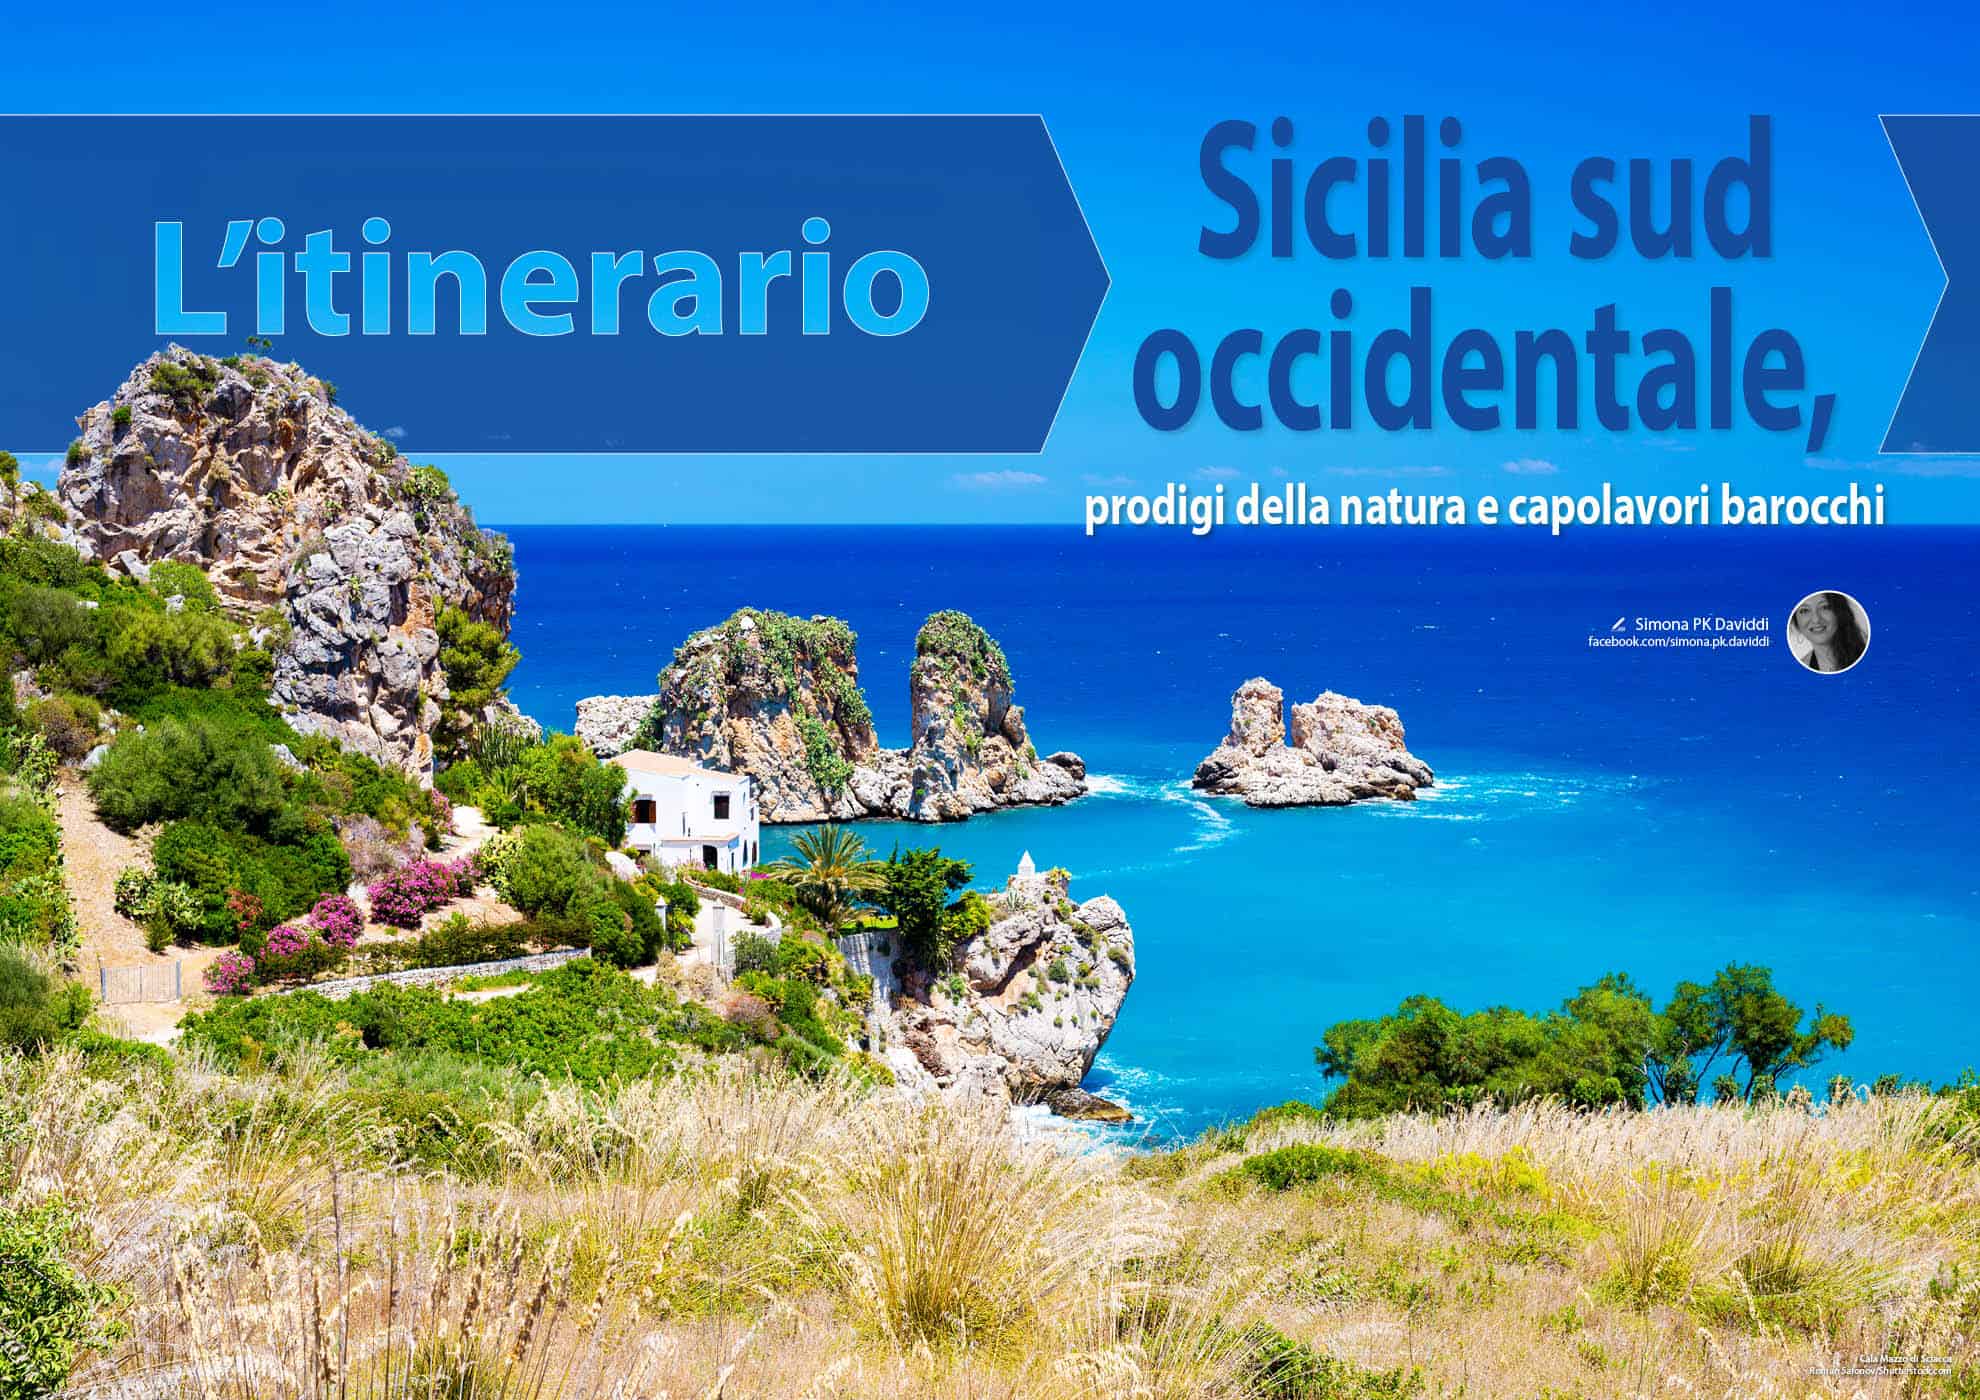 e-borghi travel 4: Mare e borghi - Itinerario: Sicilia sud occidentale, prodigi della natura e capolavori barocchi